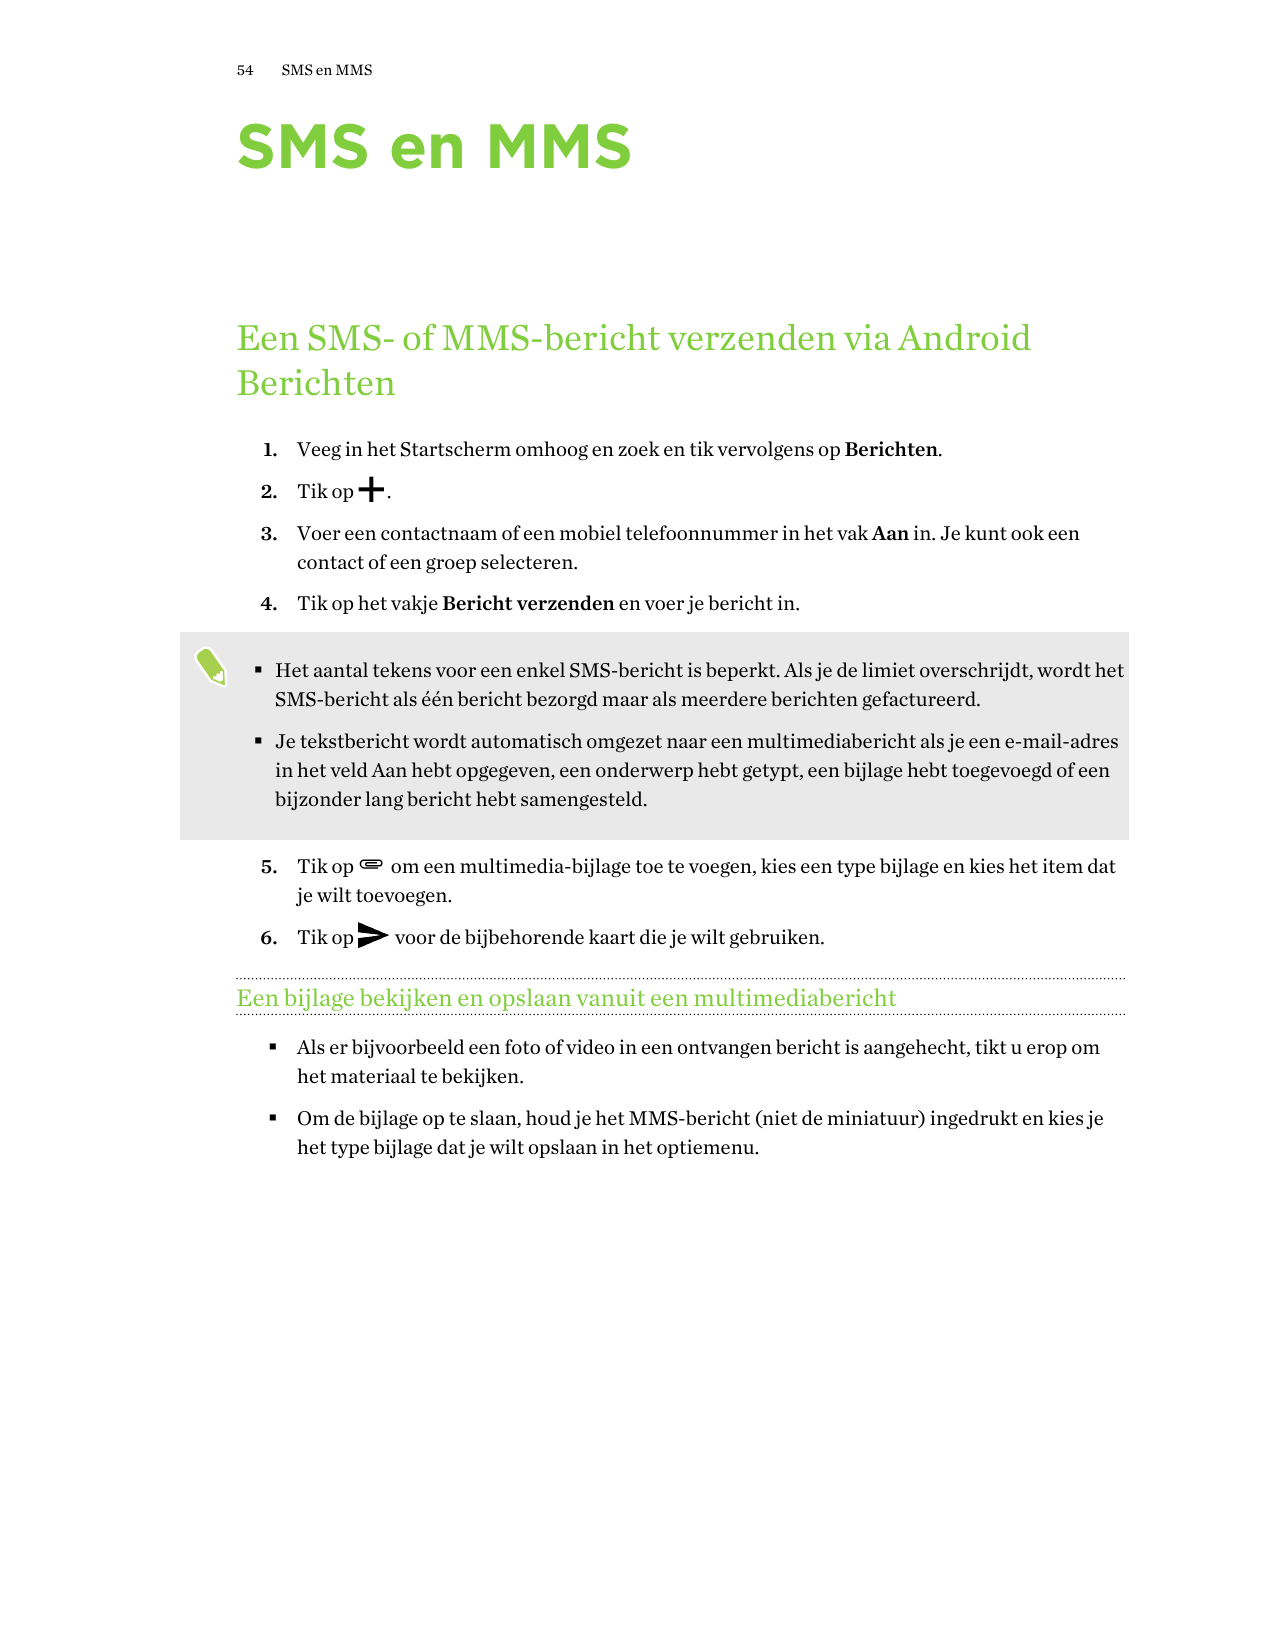 54SMS en MMSSMS en MMSEen SMS- of MMS-bericht verzenden via AndroidBerichten1. Veeg in het Startscherm omhoog en zoek en tik ver